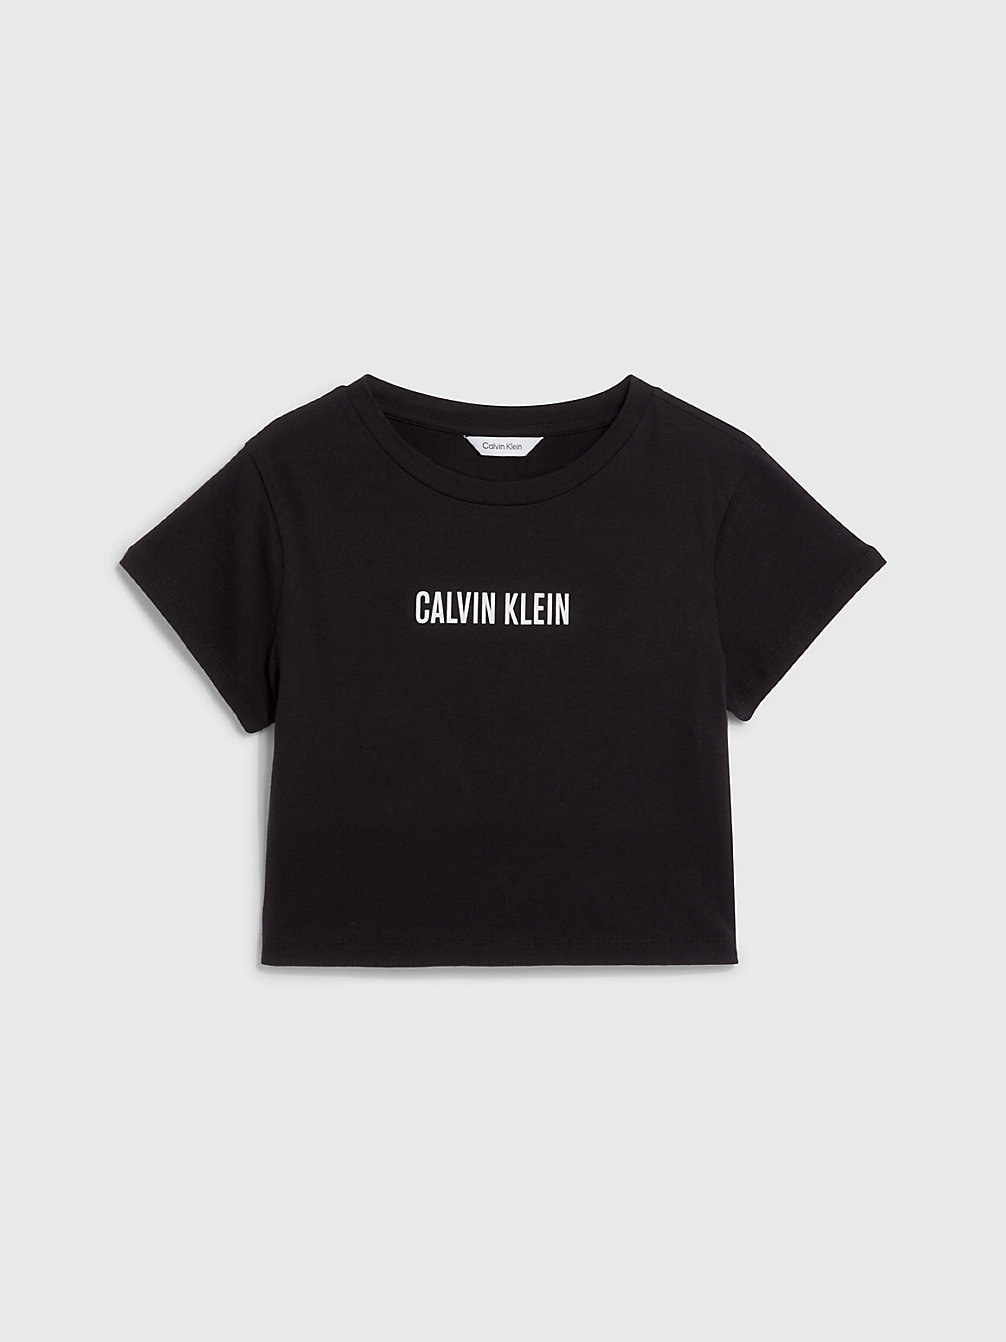 PVH BLACK > Cropped Strand-T-Shirt Für Mädchen - Intense Power > undefined girls - Calvin Klein